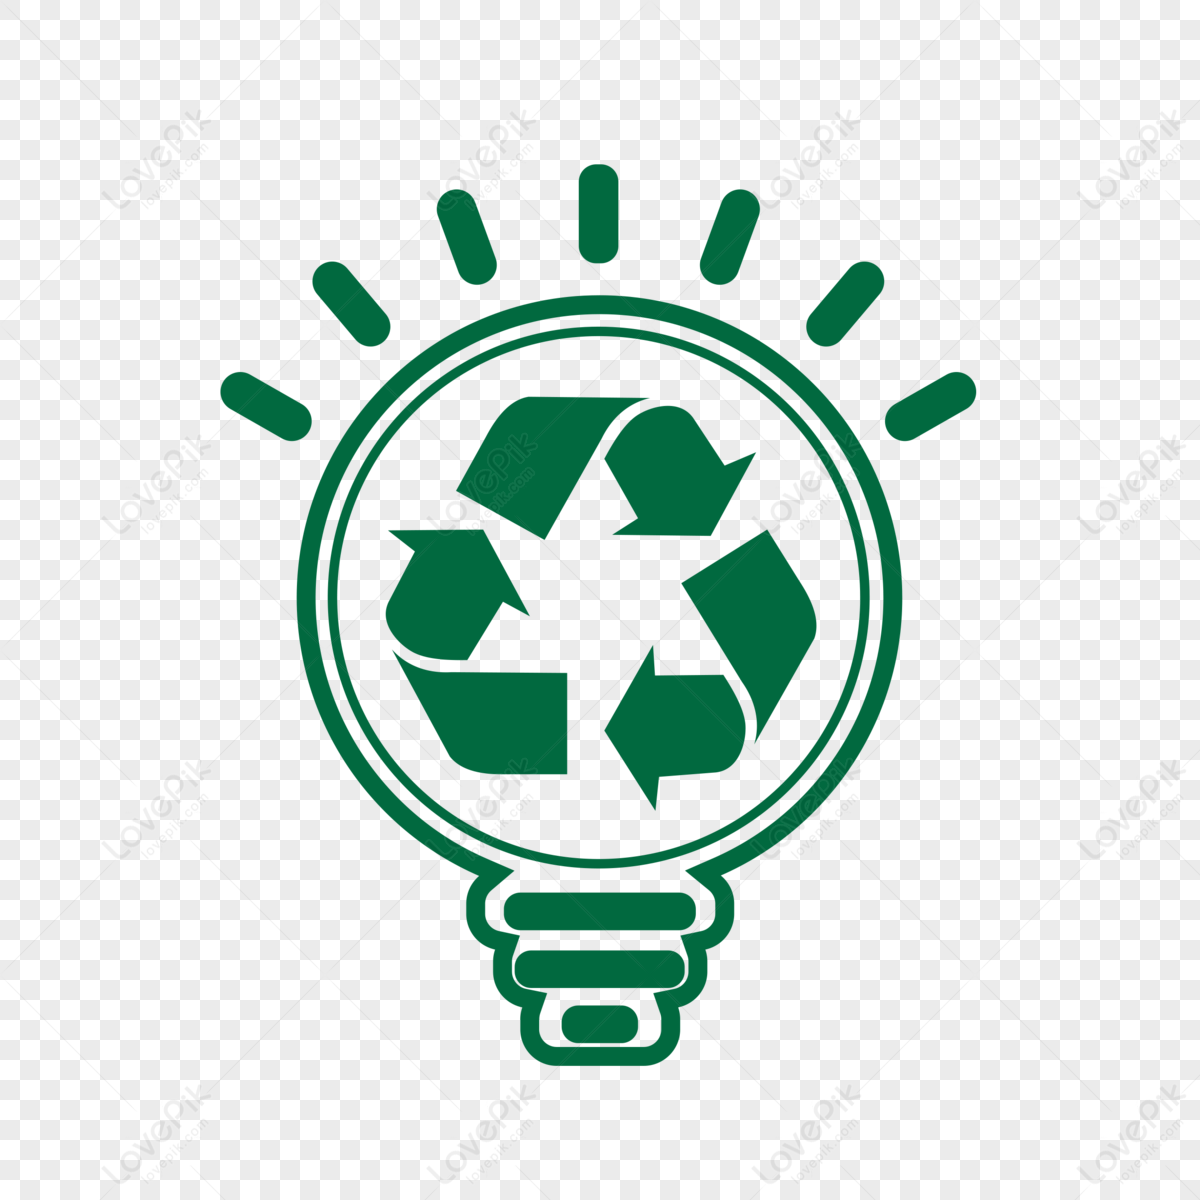 Energy Company Logo Design - Hypno Design